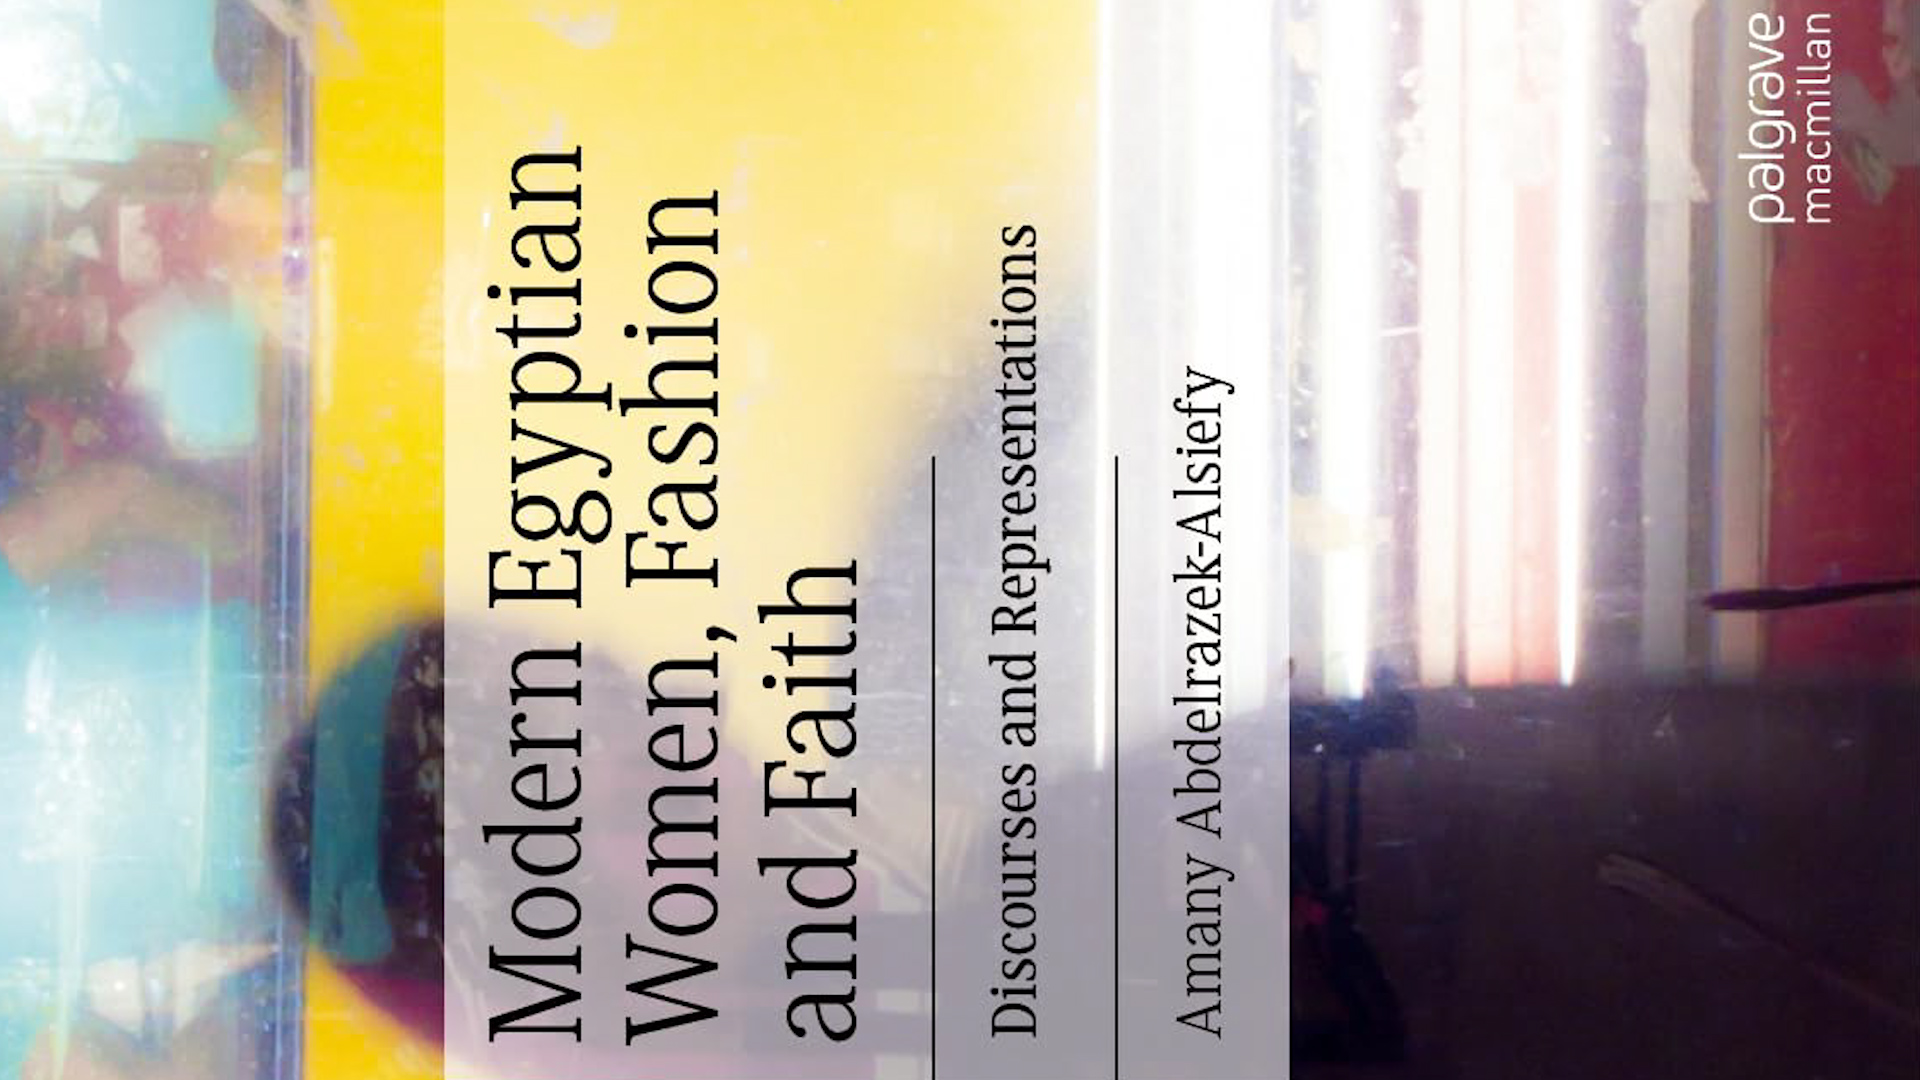 الغلاف الإنكليزي لكتاب "نساء مصريات حديثات والموضة والإيمان: خطابات وتمثلات" للباحثة أماني الصيفي 